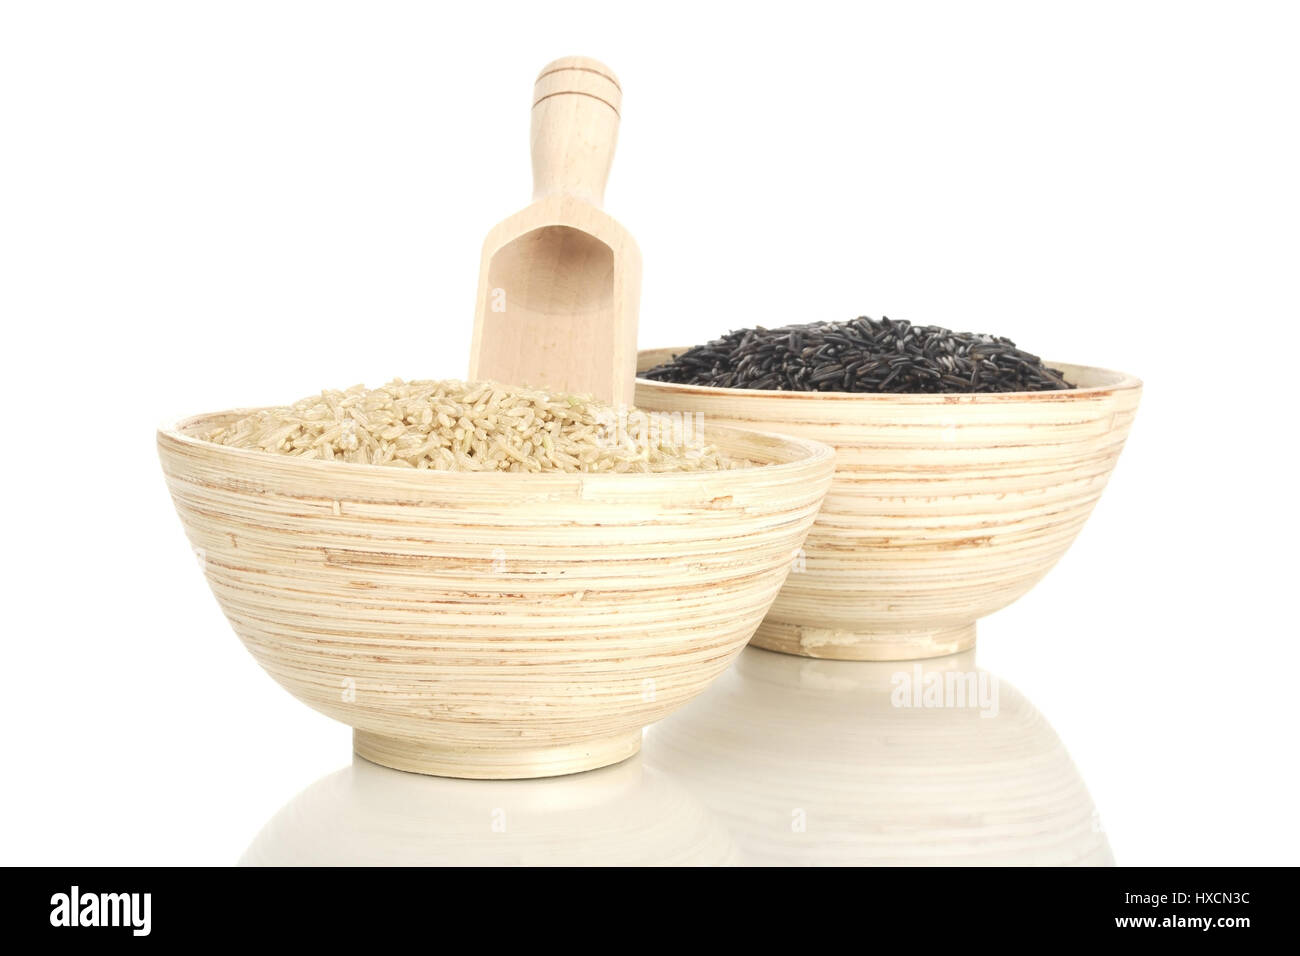 Wooden bowls with natural rice and wild rice, Holzschalen mit Natur- und Wildreis Stock Photo